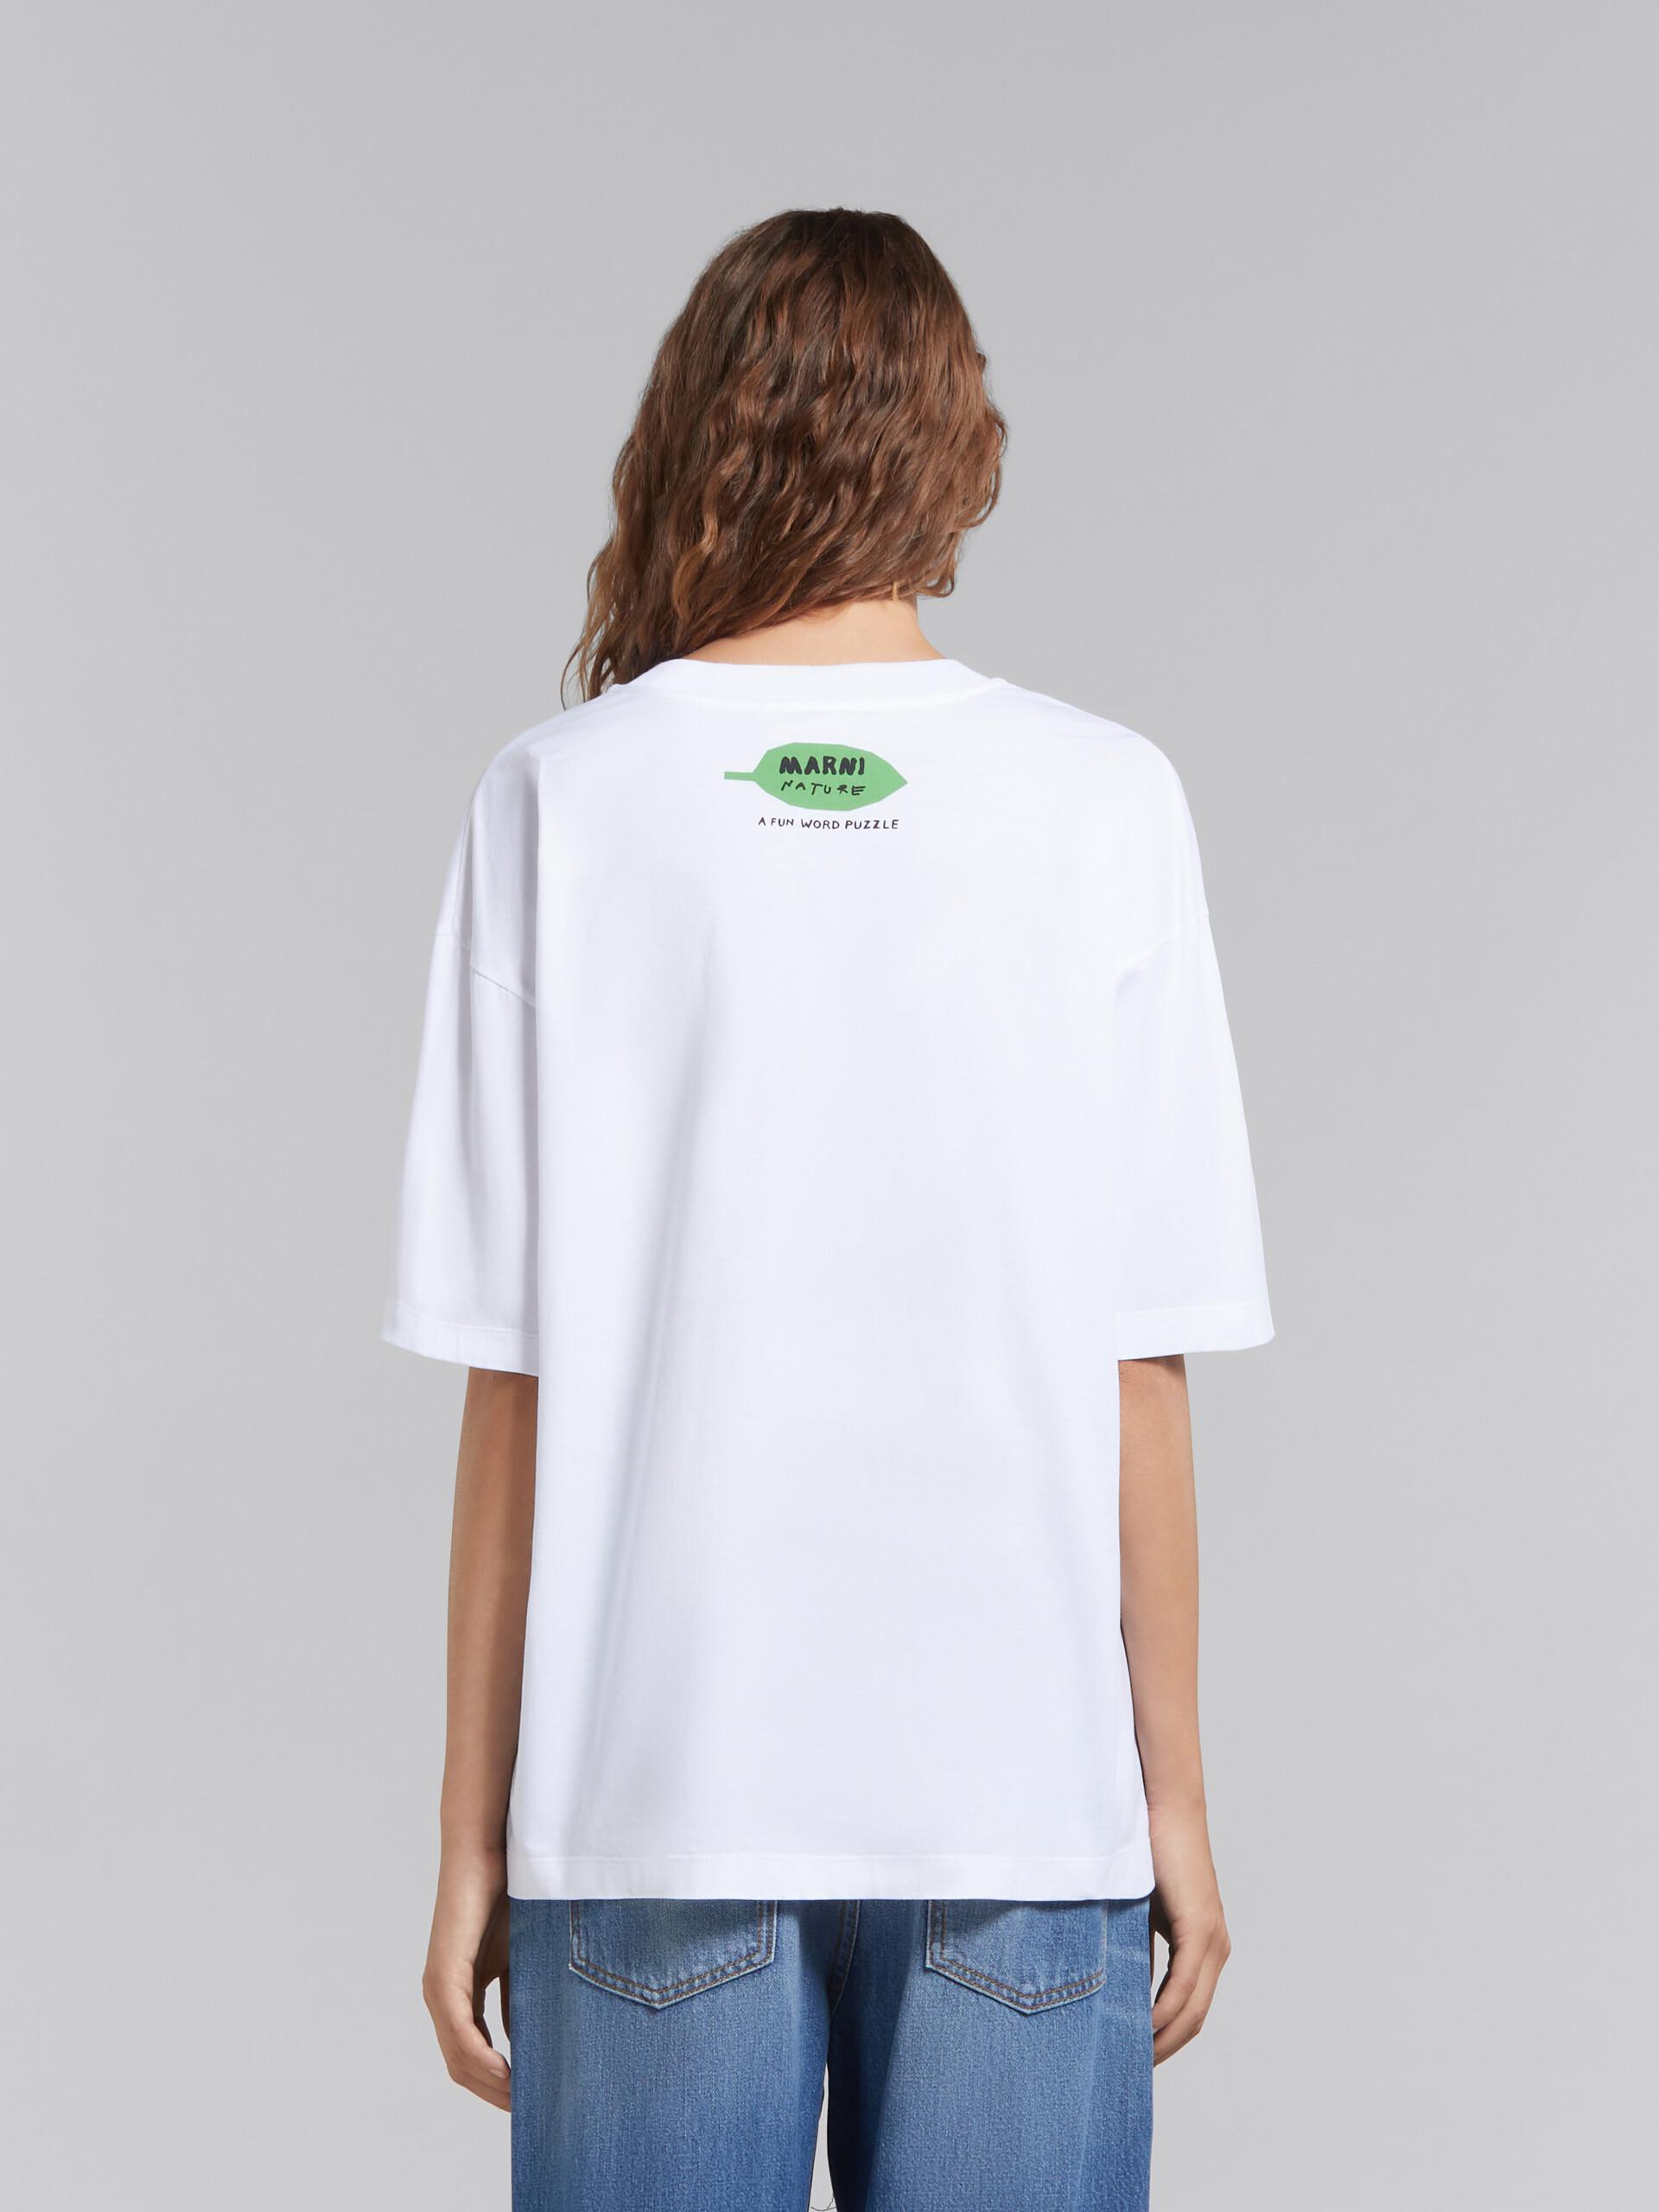 ホワイト wordsearchフラワープリント オーガニックコットン製Tシャツ - Tシャツ - Image 3